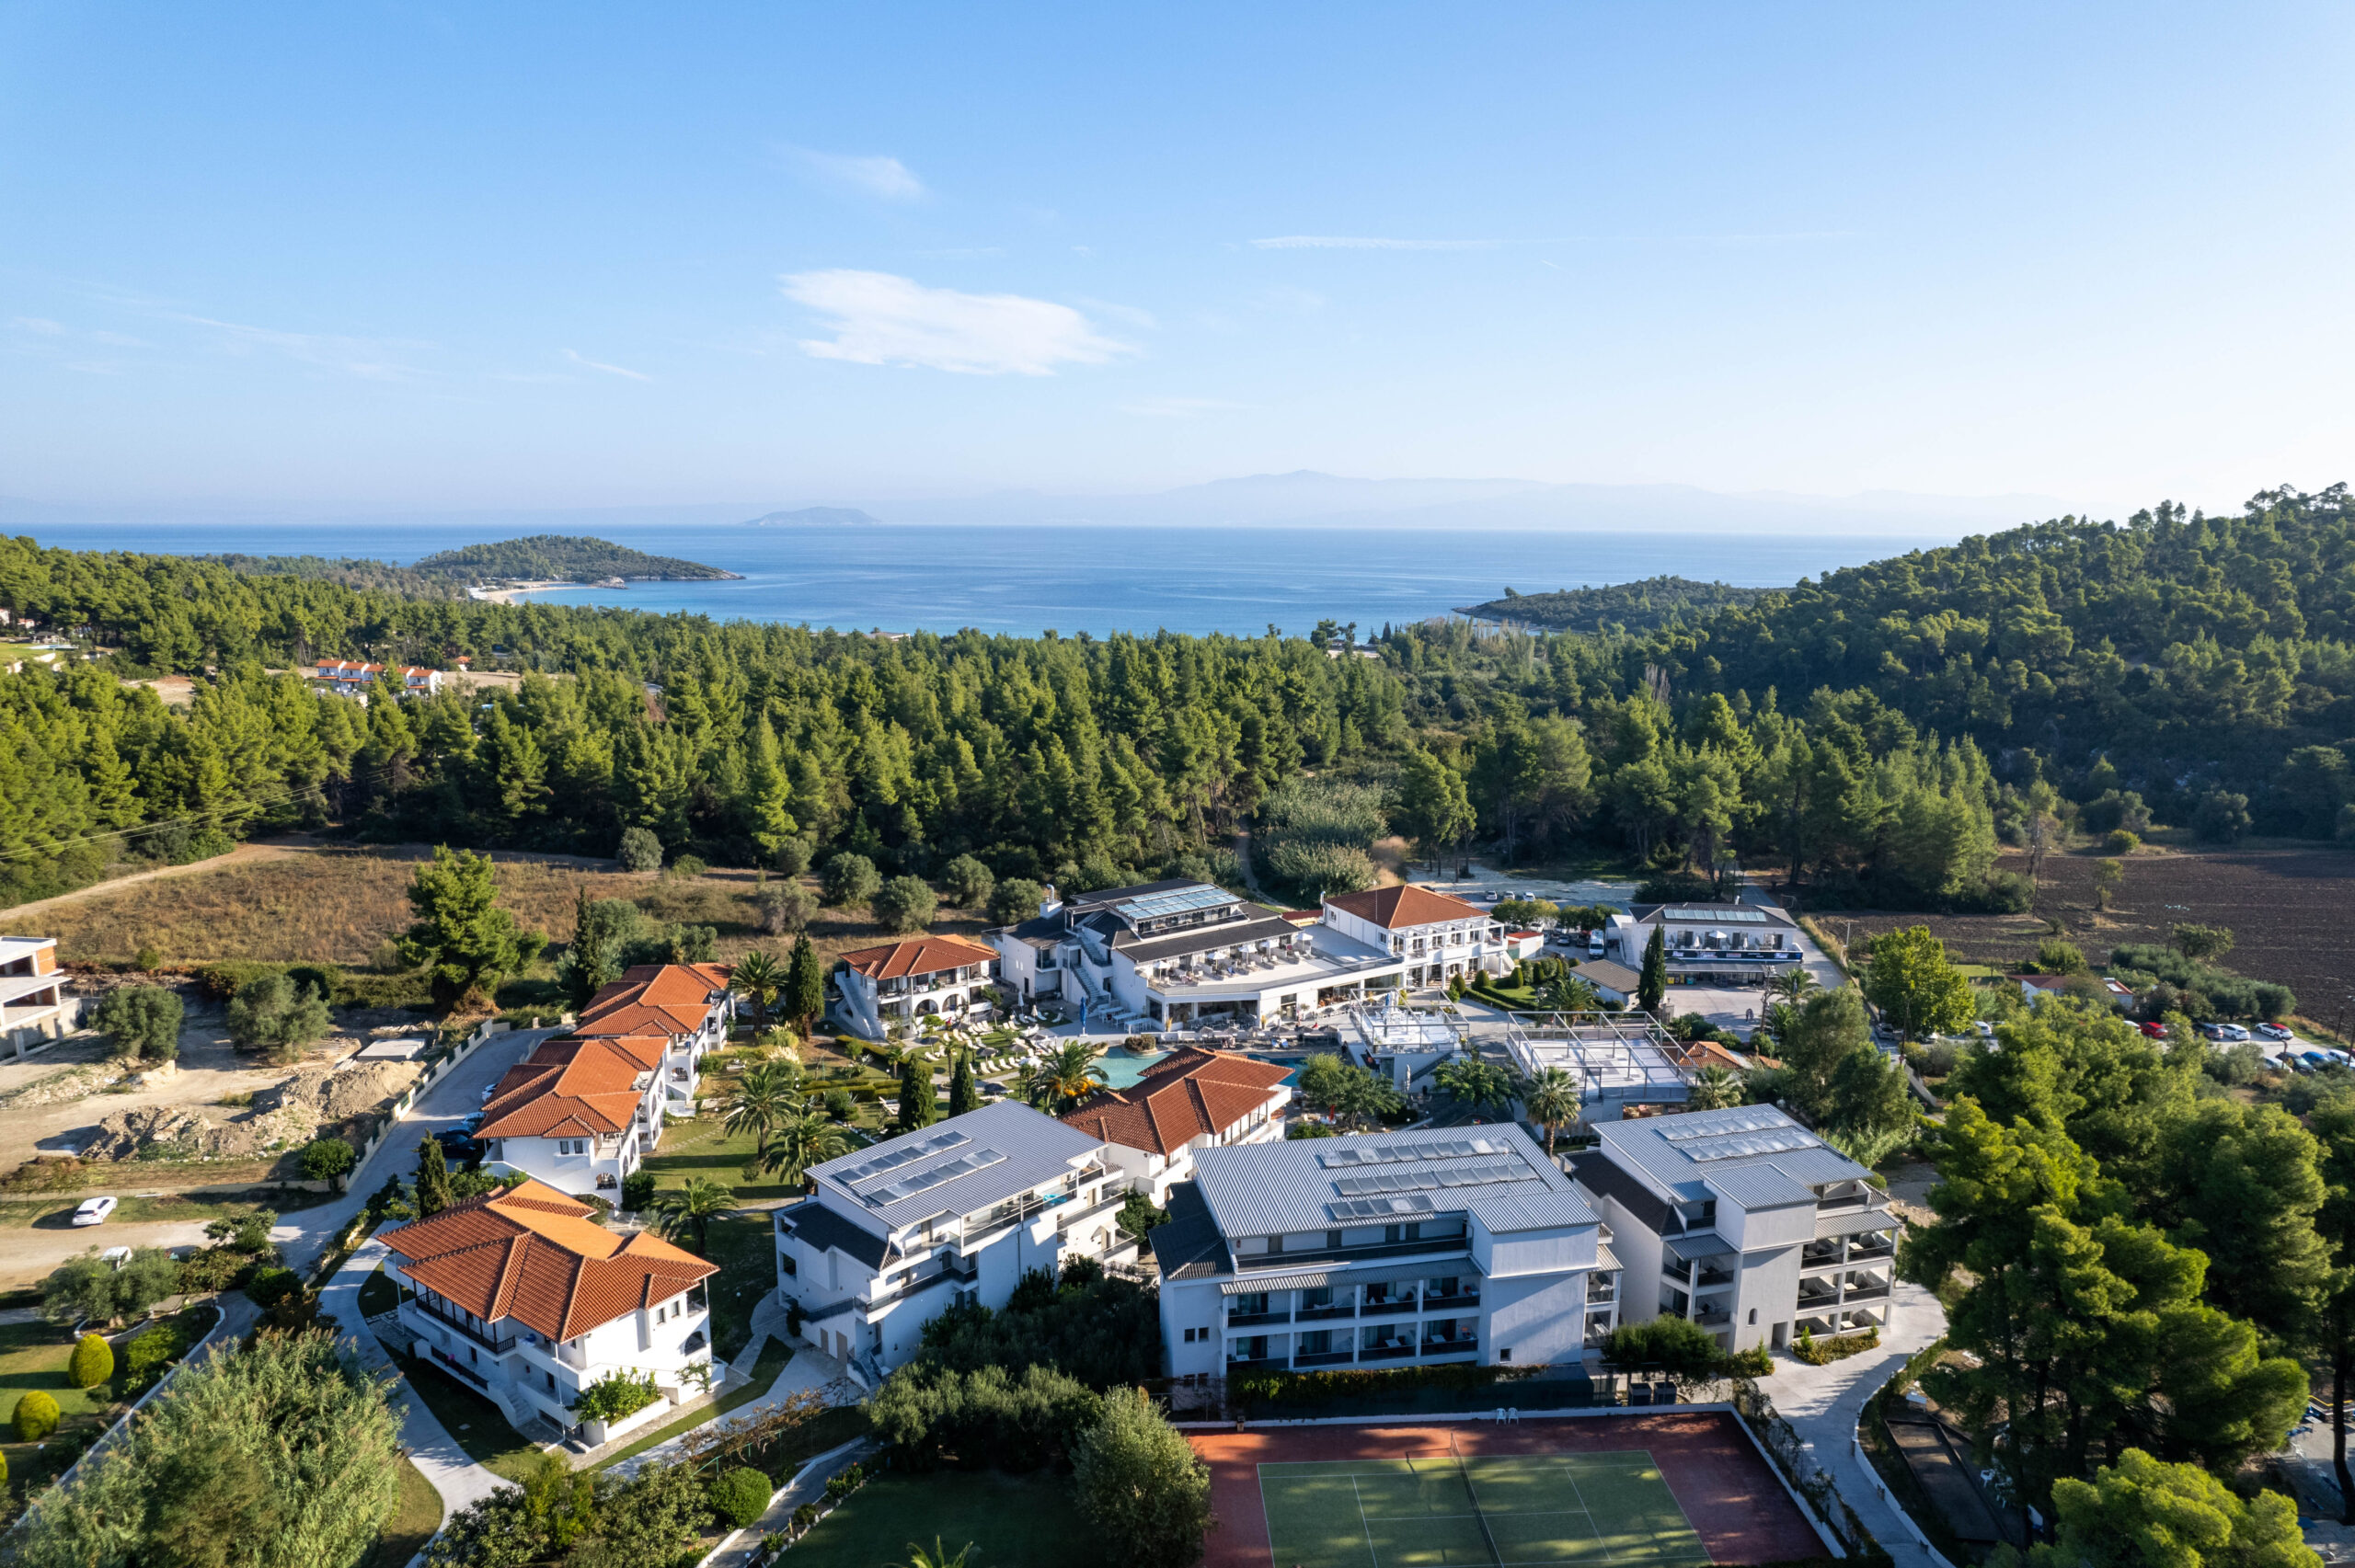 Drohnenfoto einer Hotelanlage in Griechenland